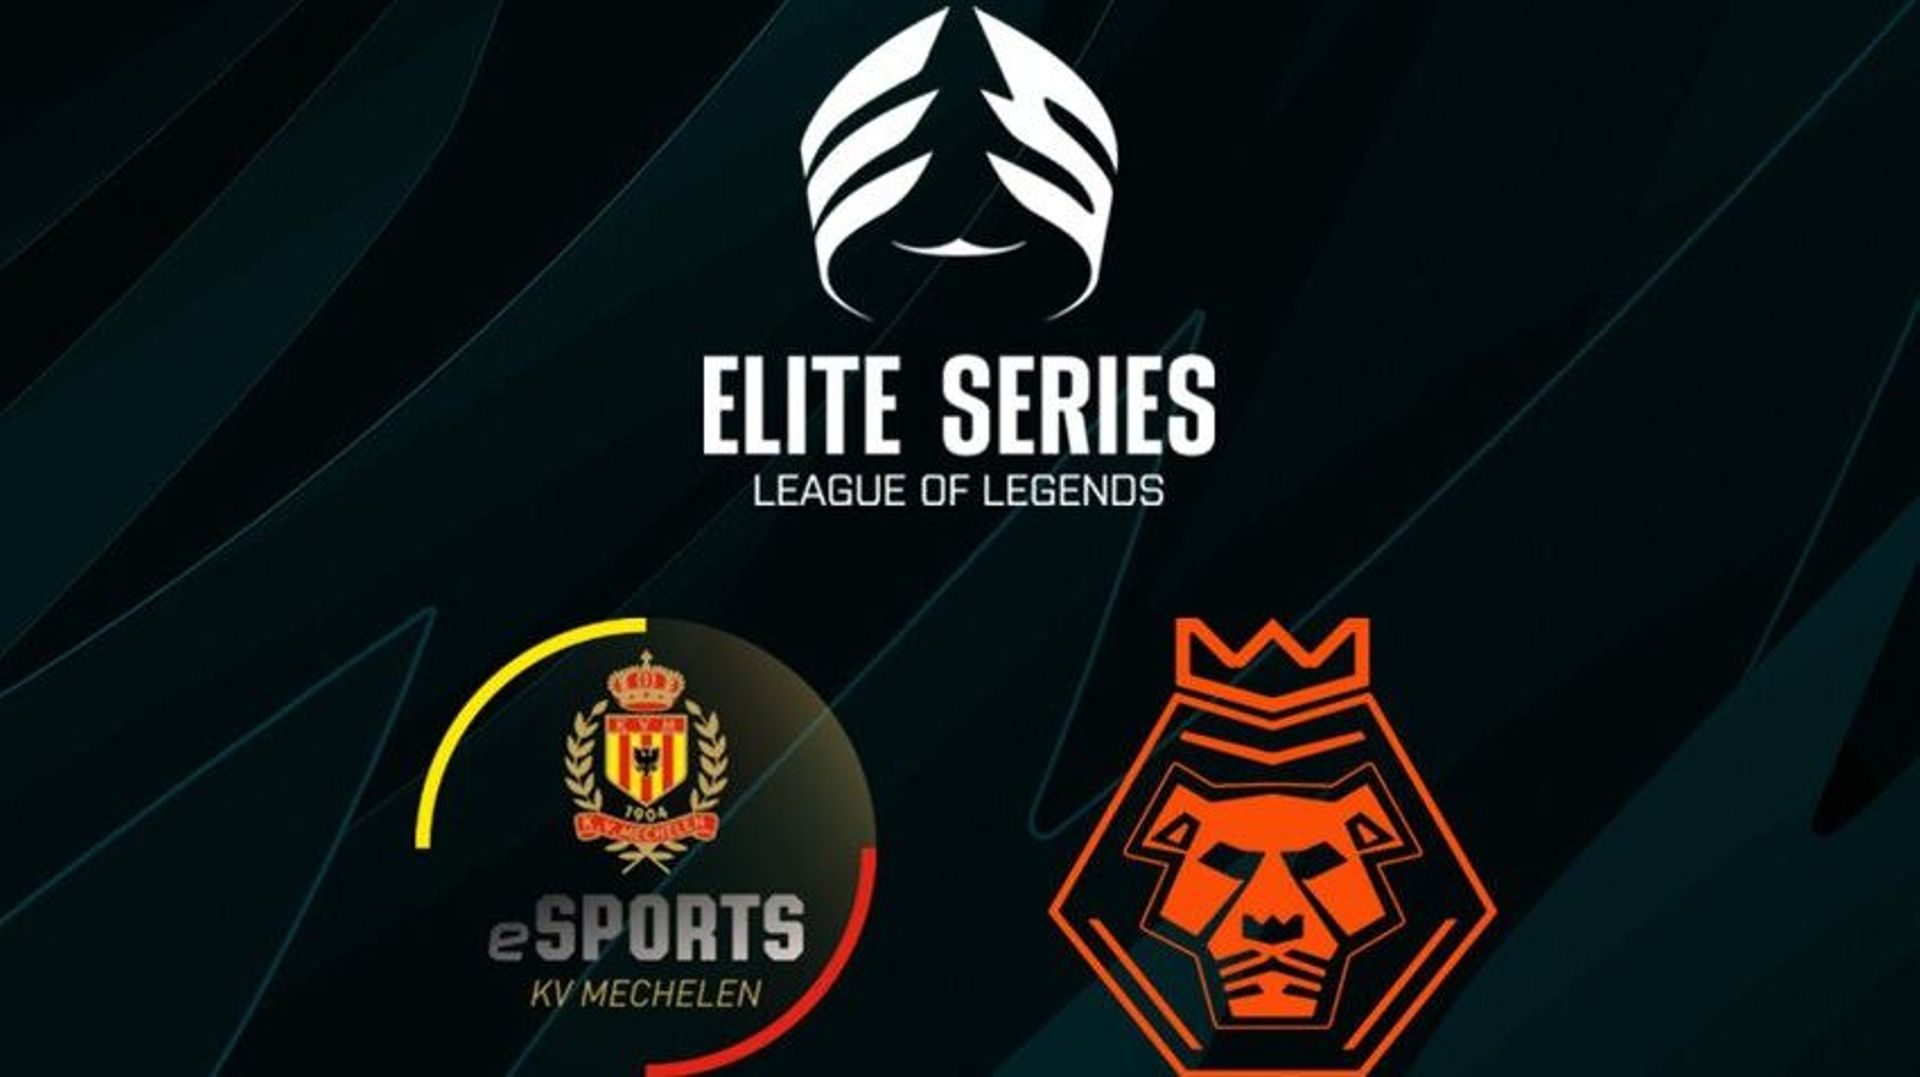 Après le tournoi de promotion, ce sont finalement les équipes de KVM Esports et des Nothern Lions qui restent en course pour la prochaine saison des Elite Series.